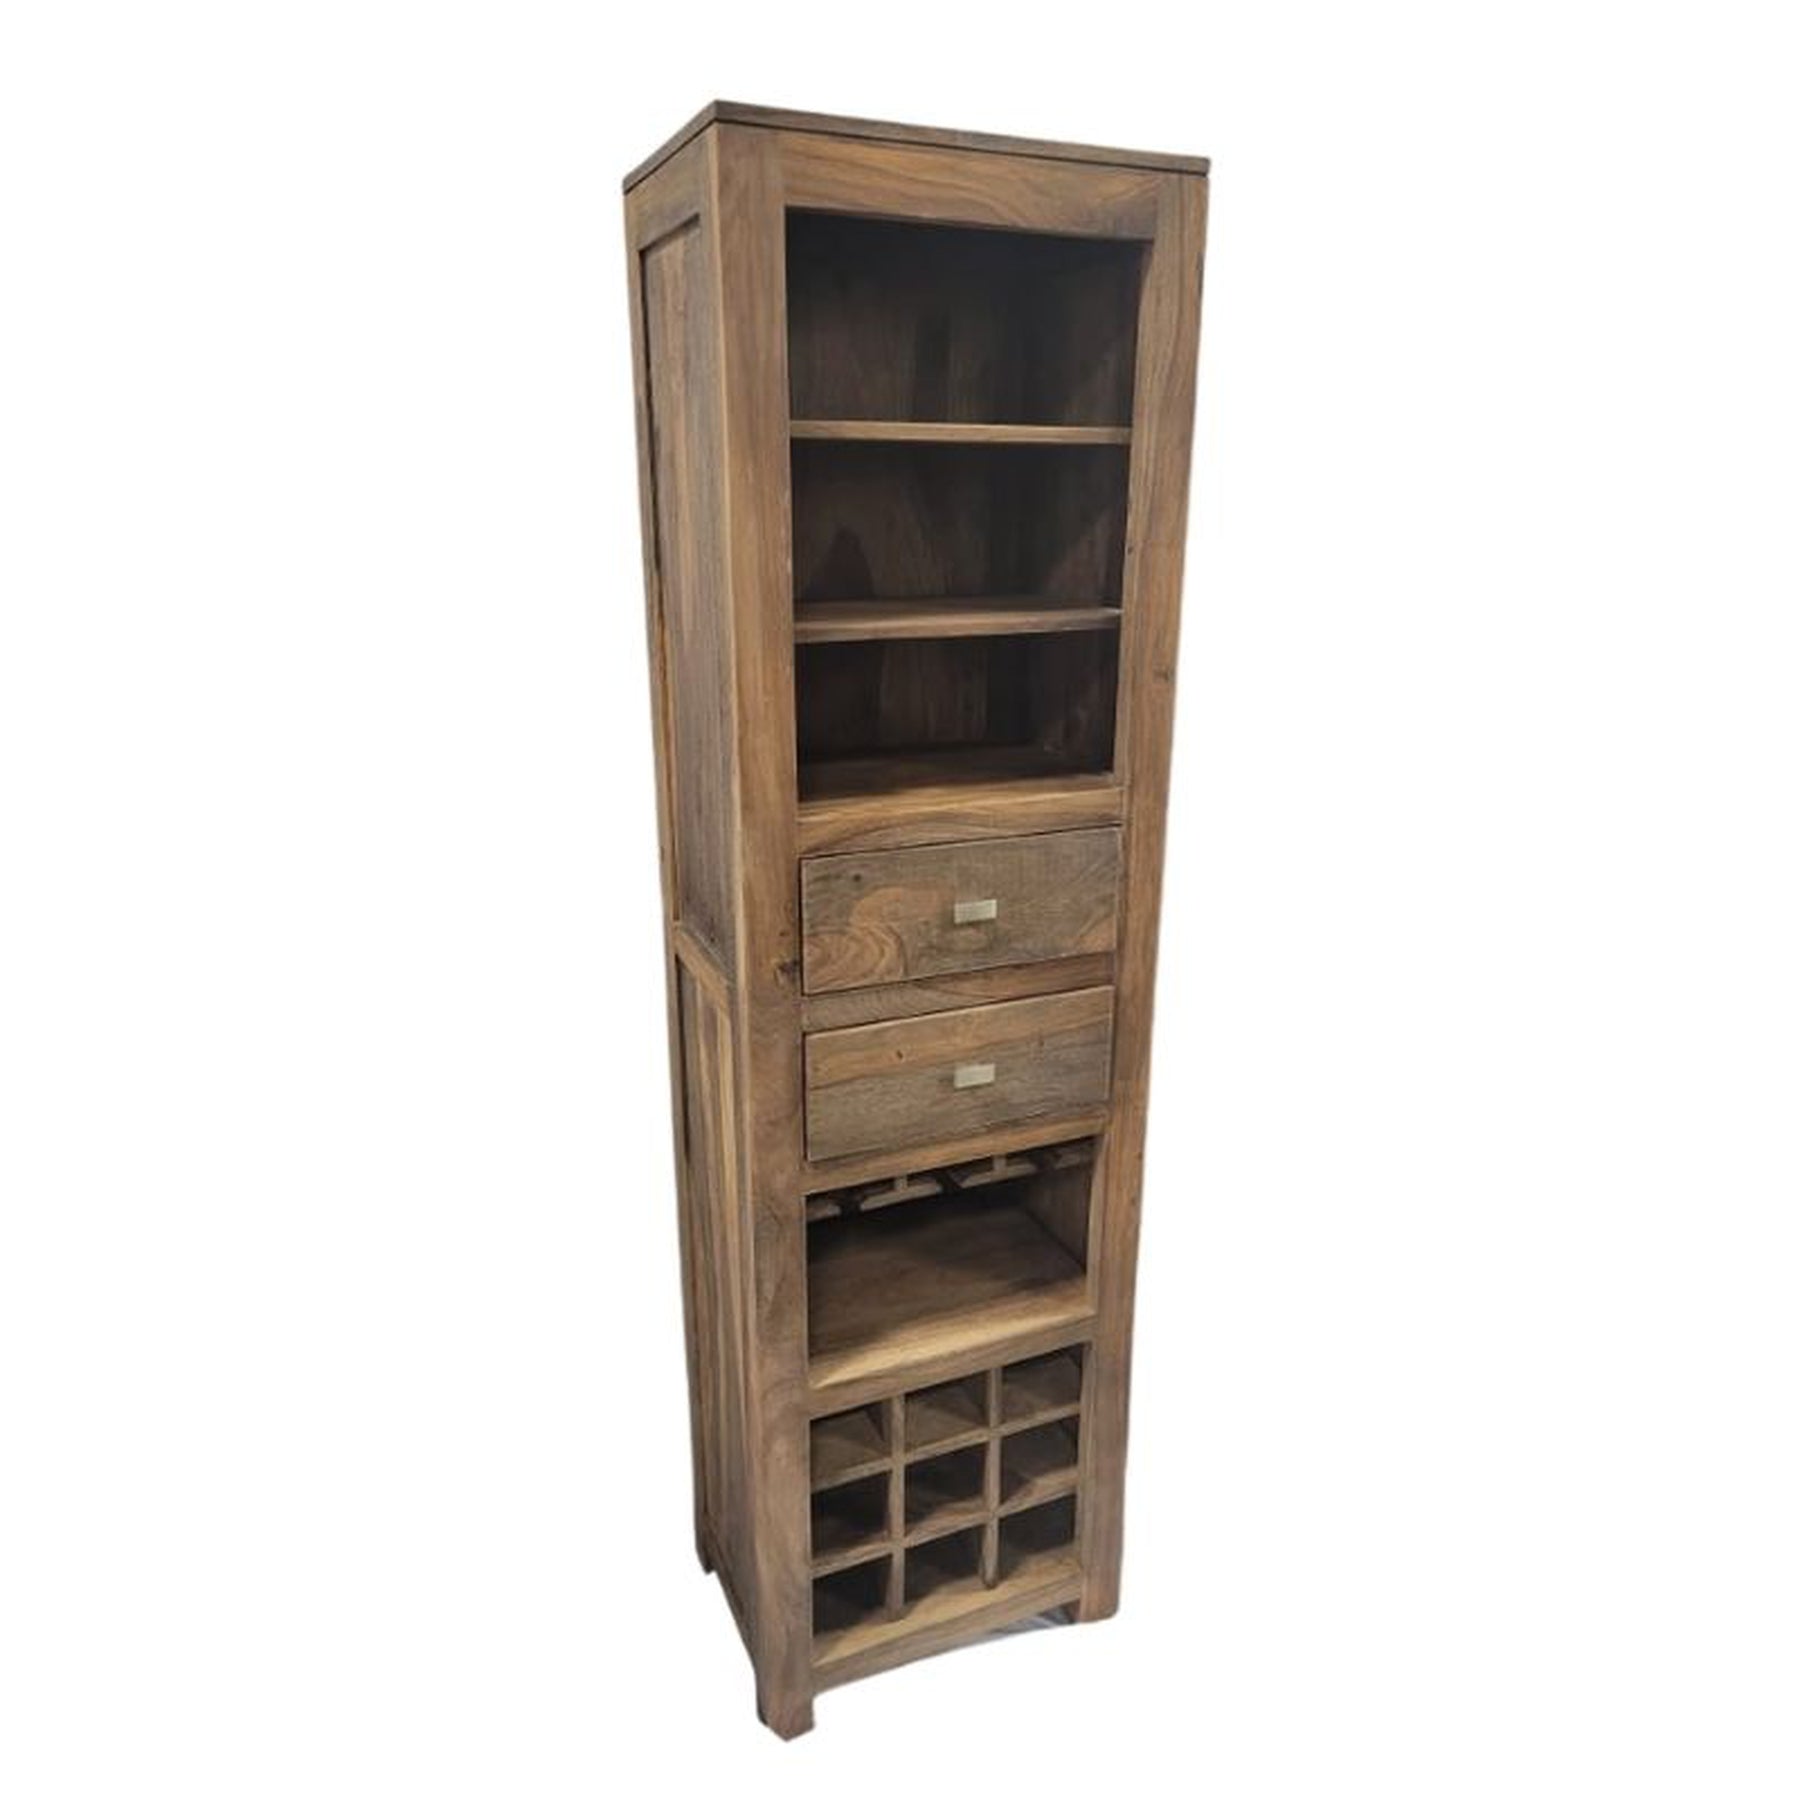 Zen Wine Rack | Wall Wine Rack with Storage Shelf and Drawers | Wooden Wine Rack Shelf Perfect | 180x50x36 cm